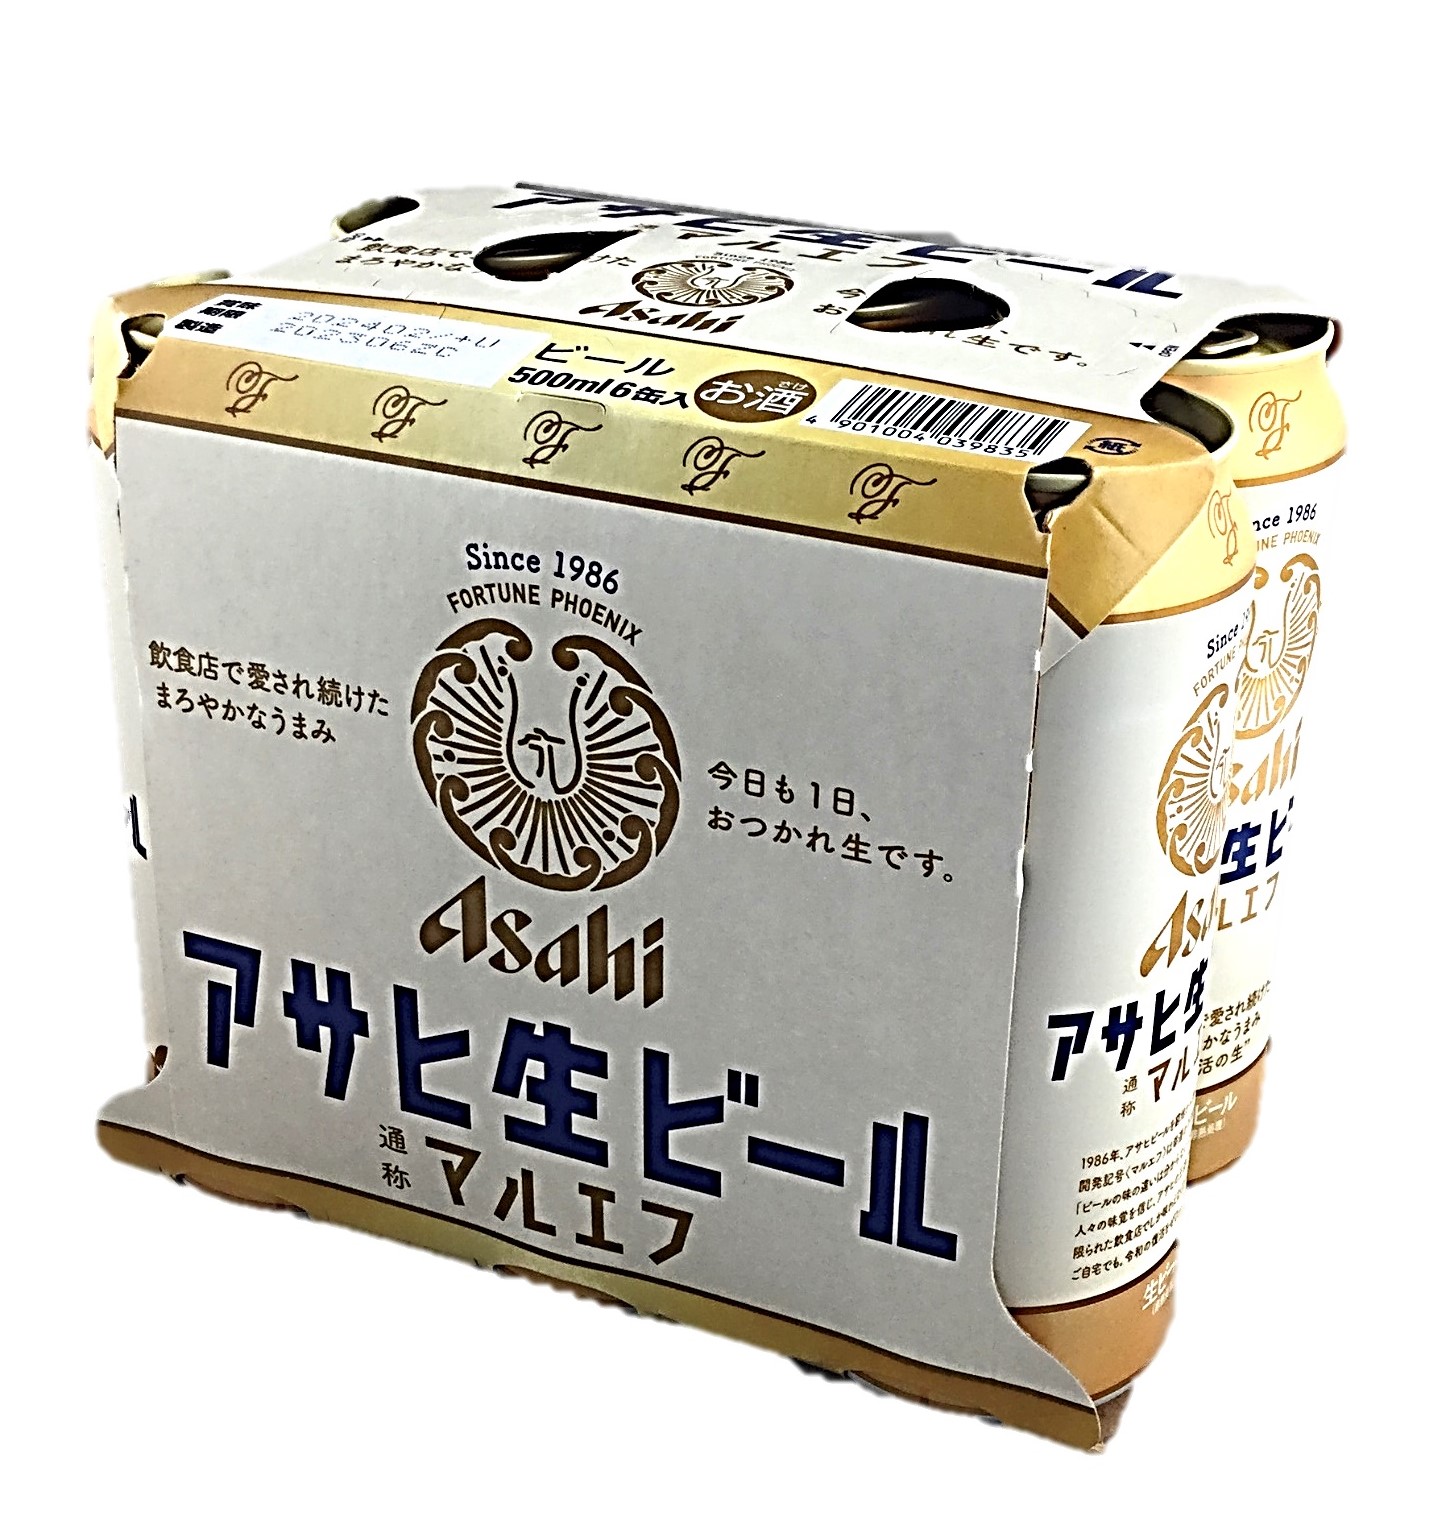 アサヒ生ビール500ml×6 アサヒ